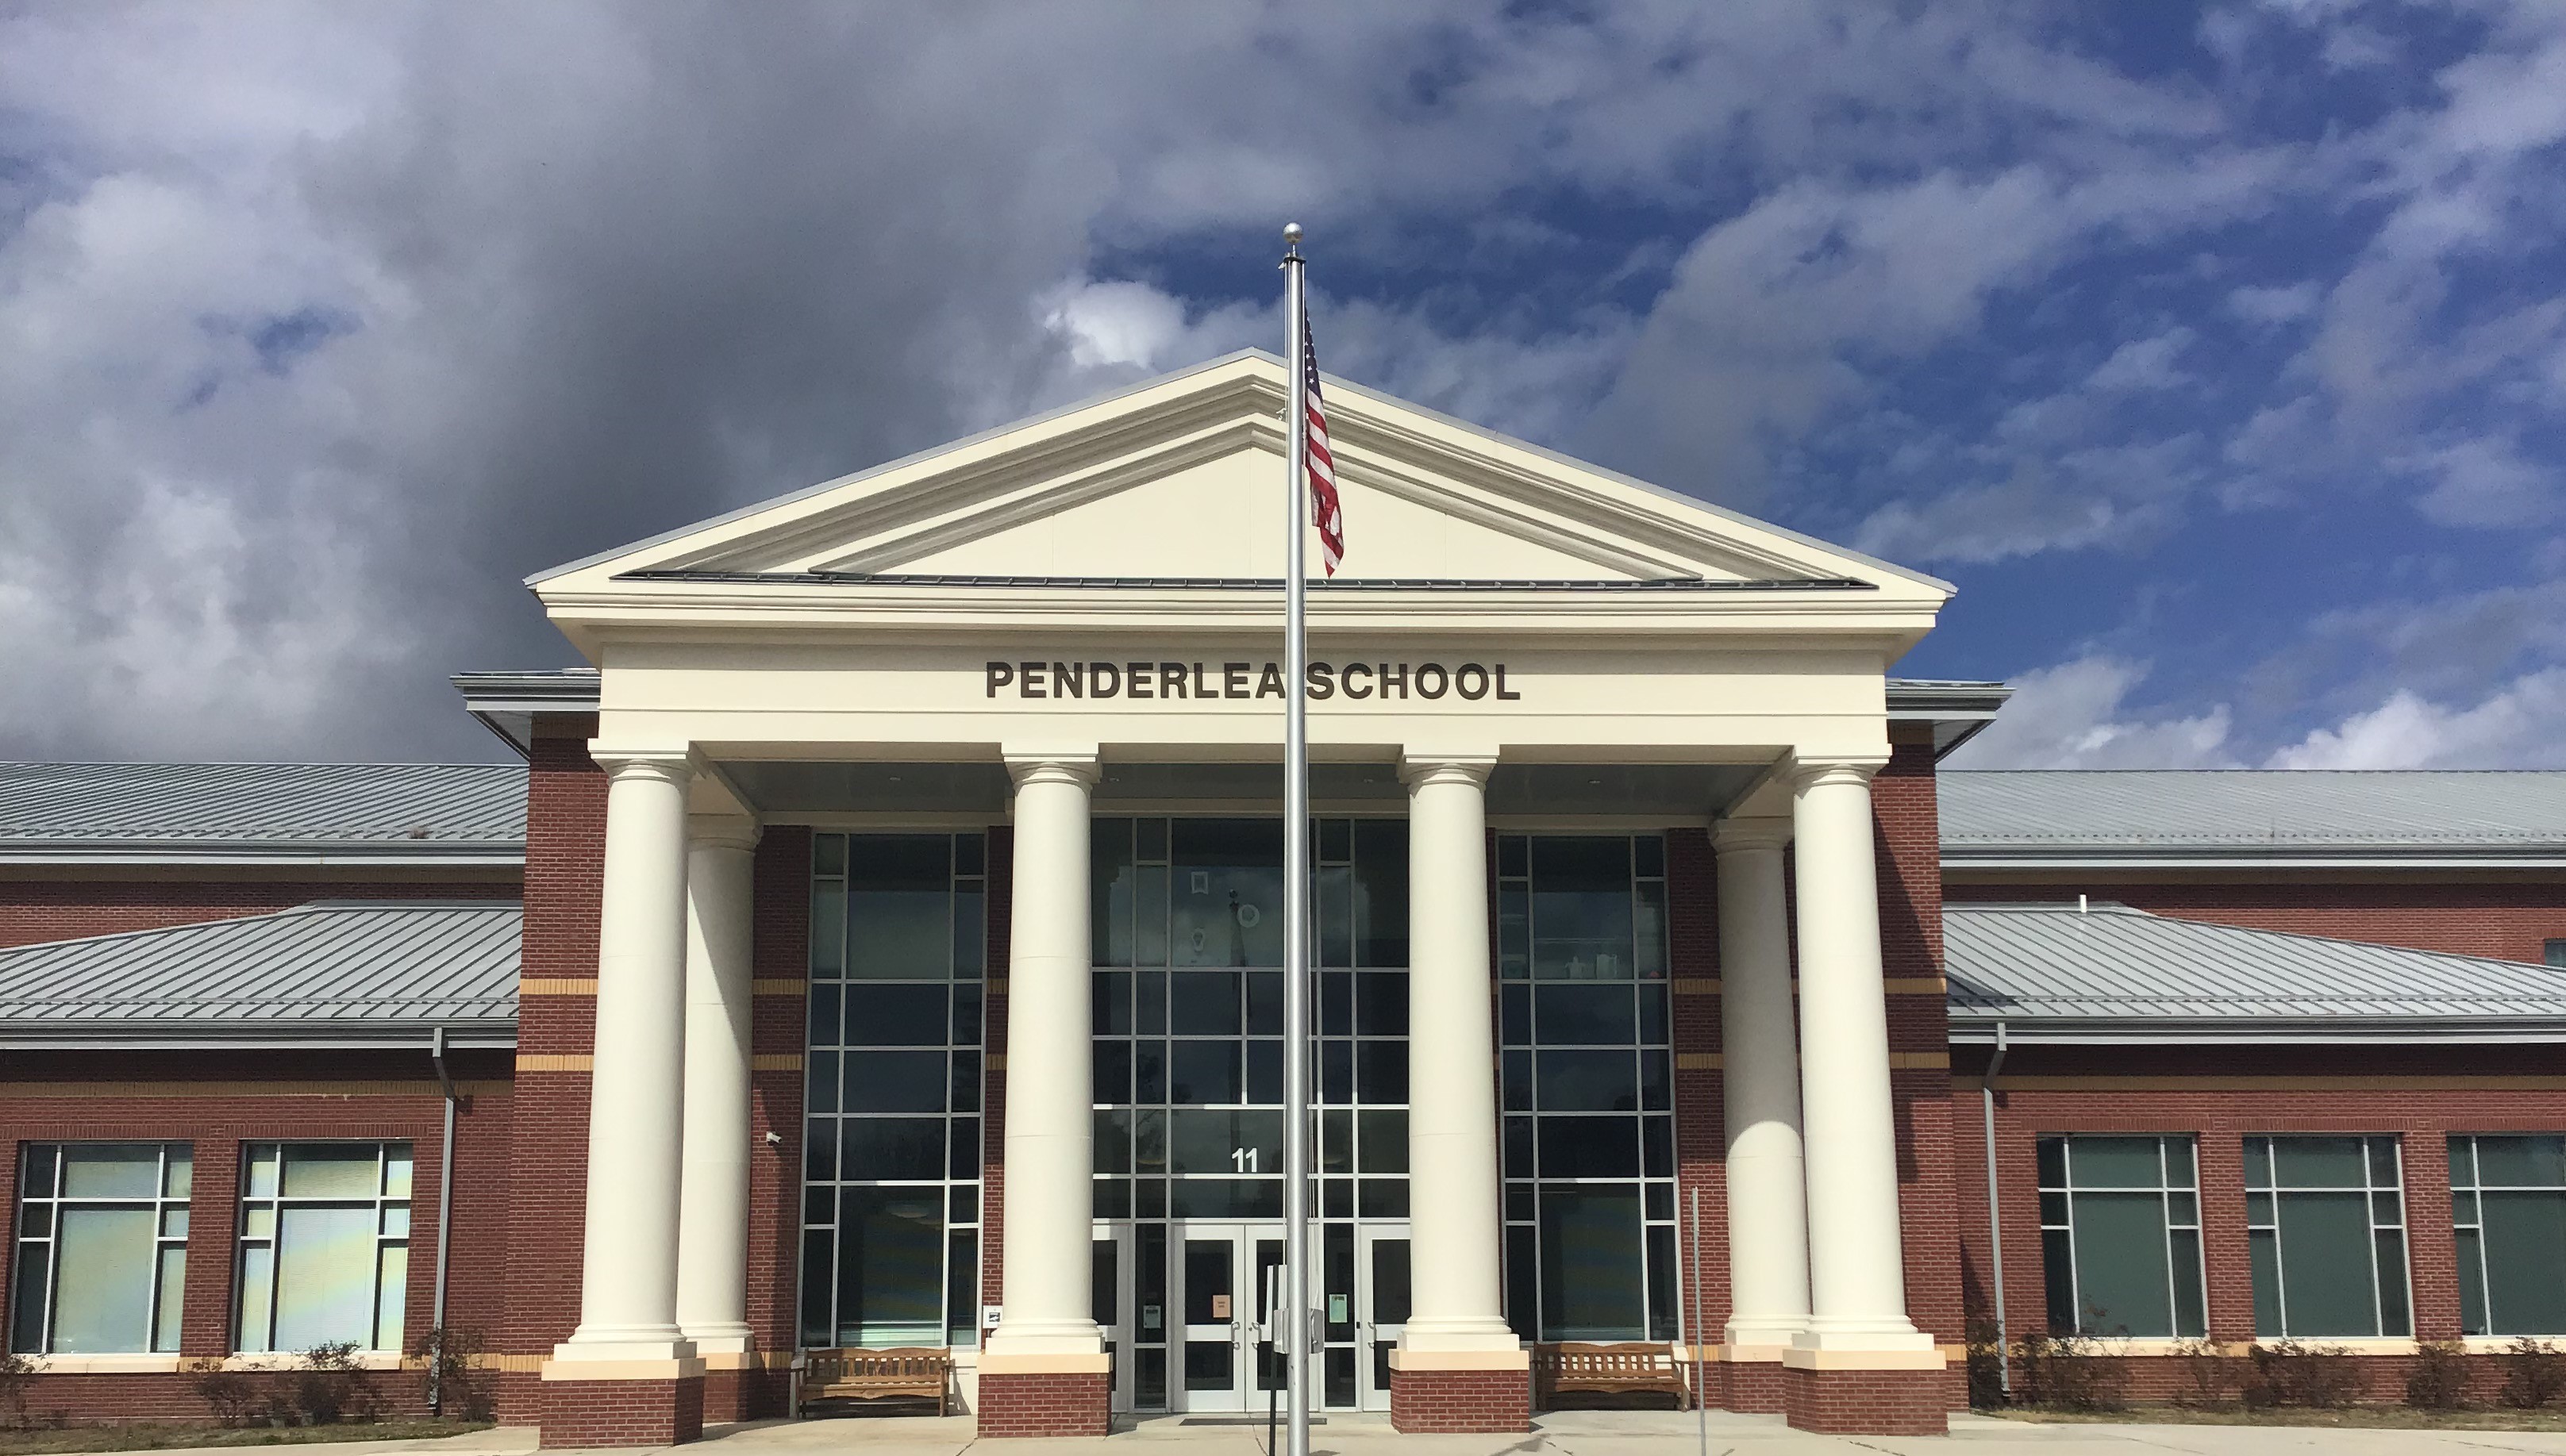 Penderlea School